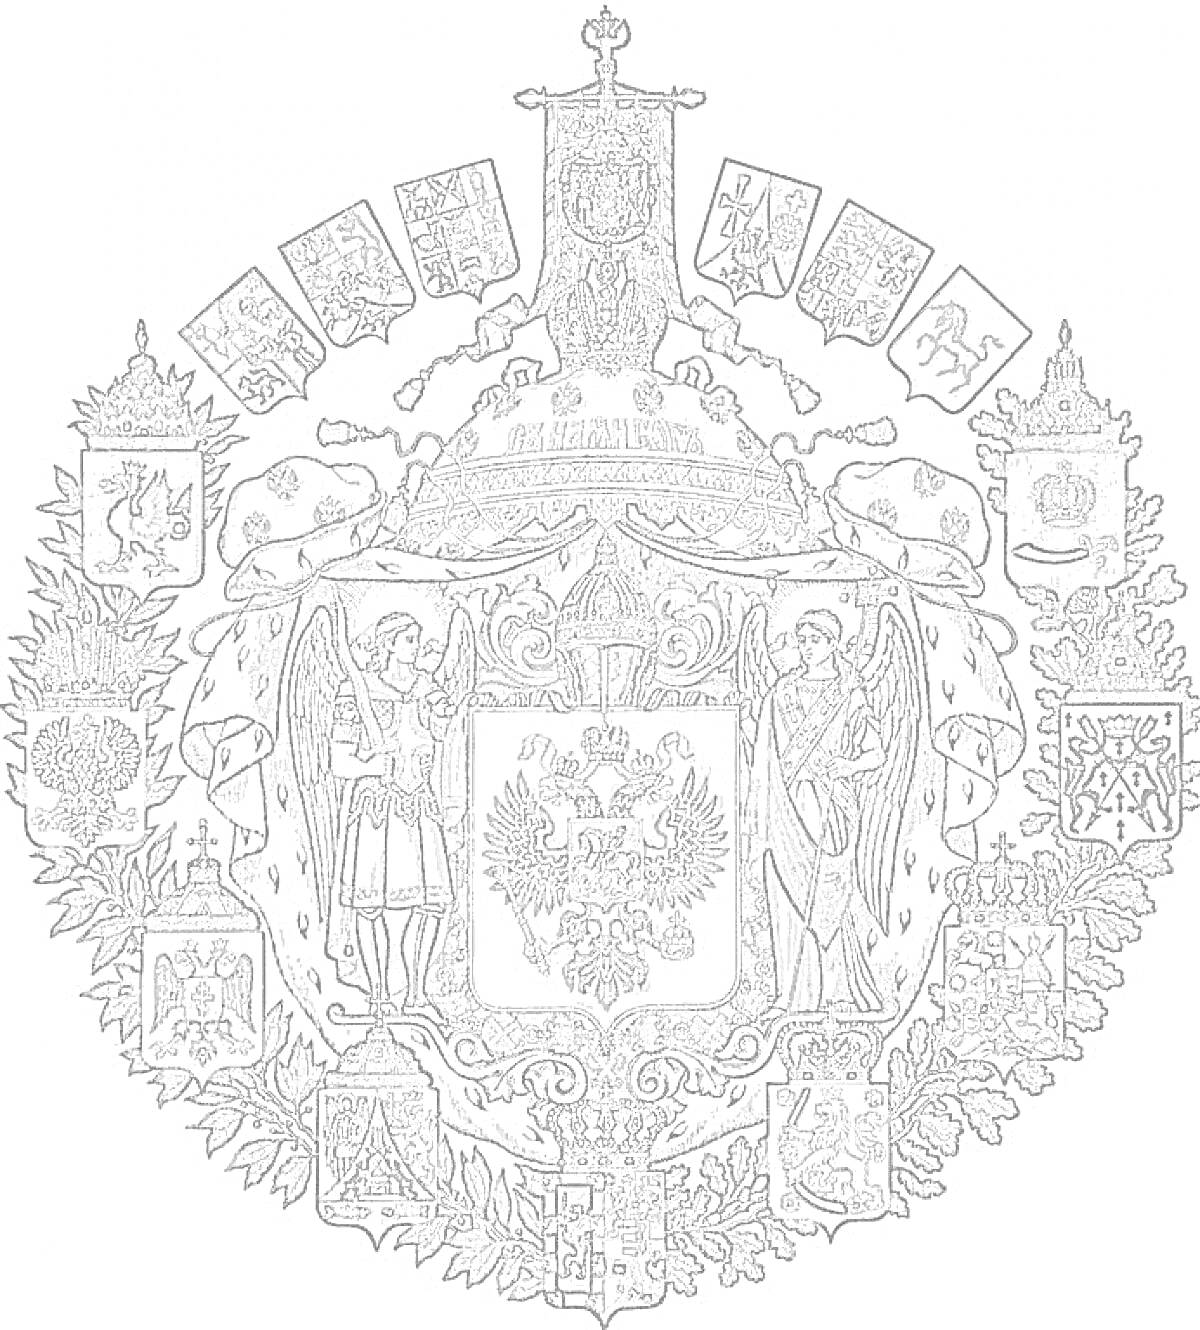 Герб России с ангелами, орлом и дополнительными гербами вокруг